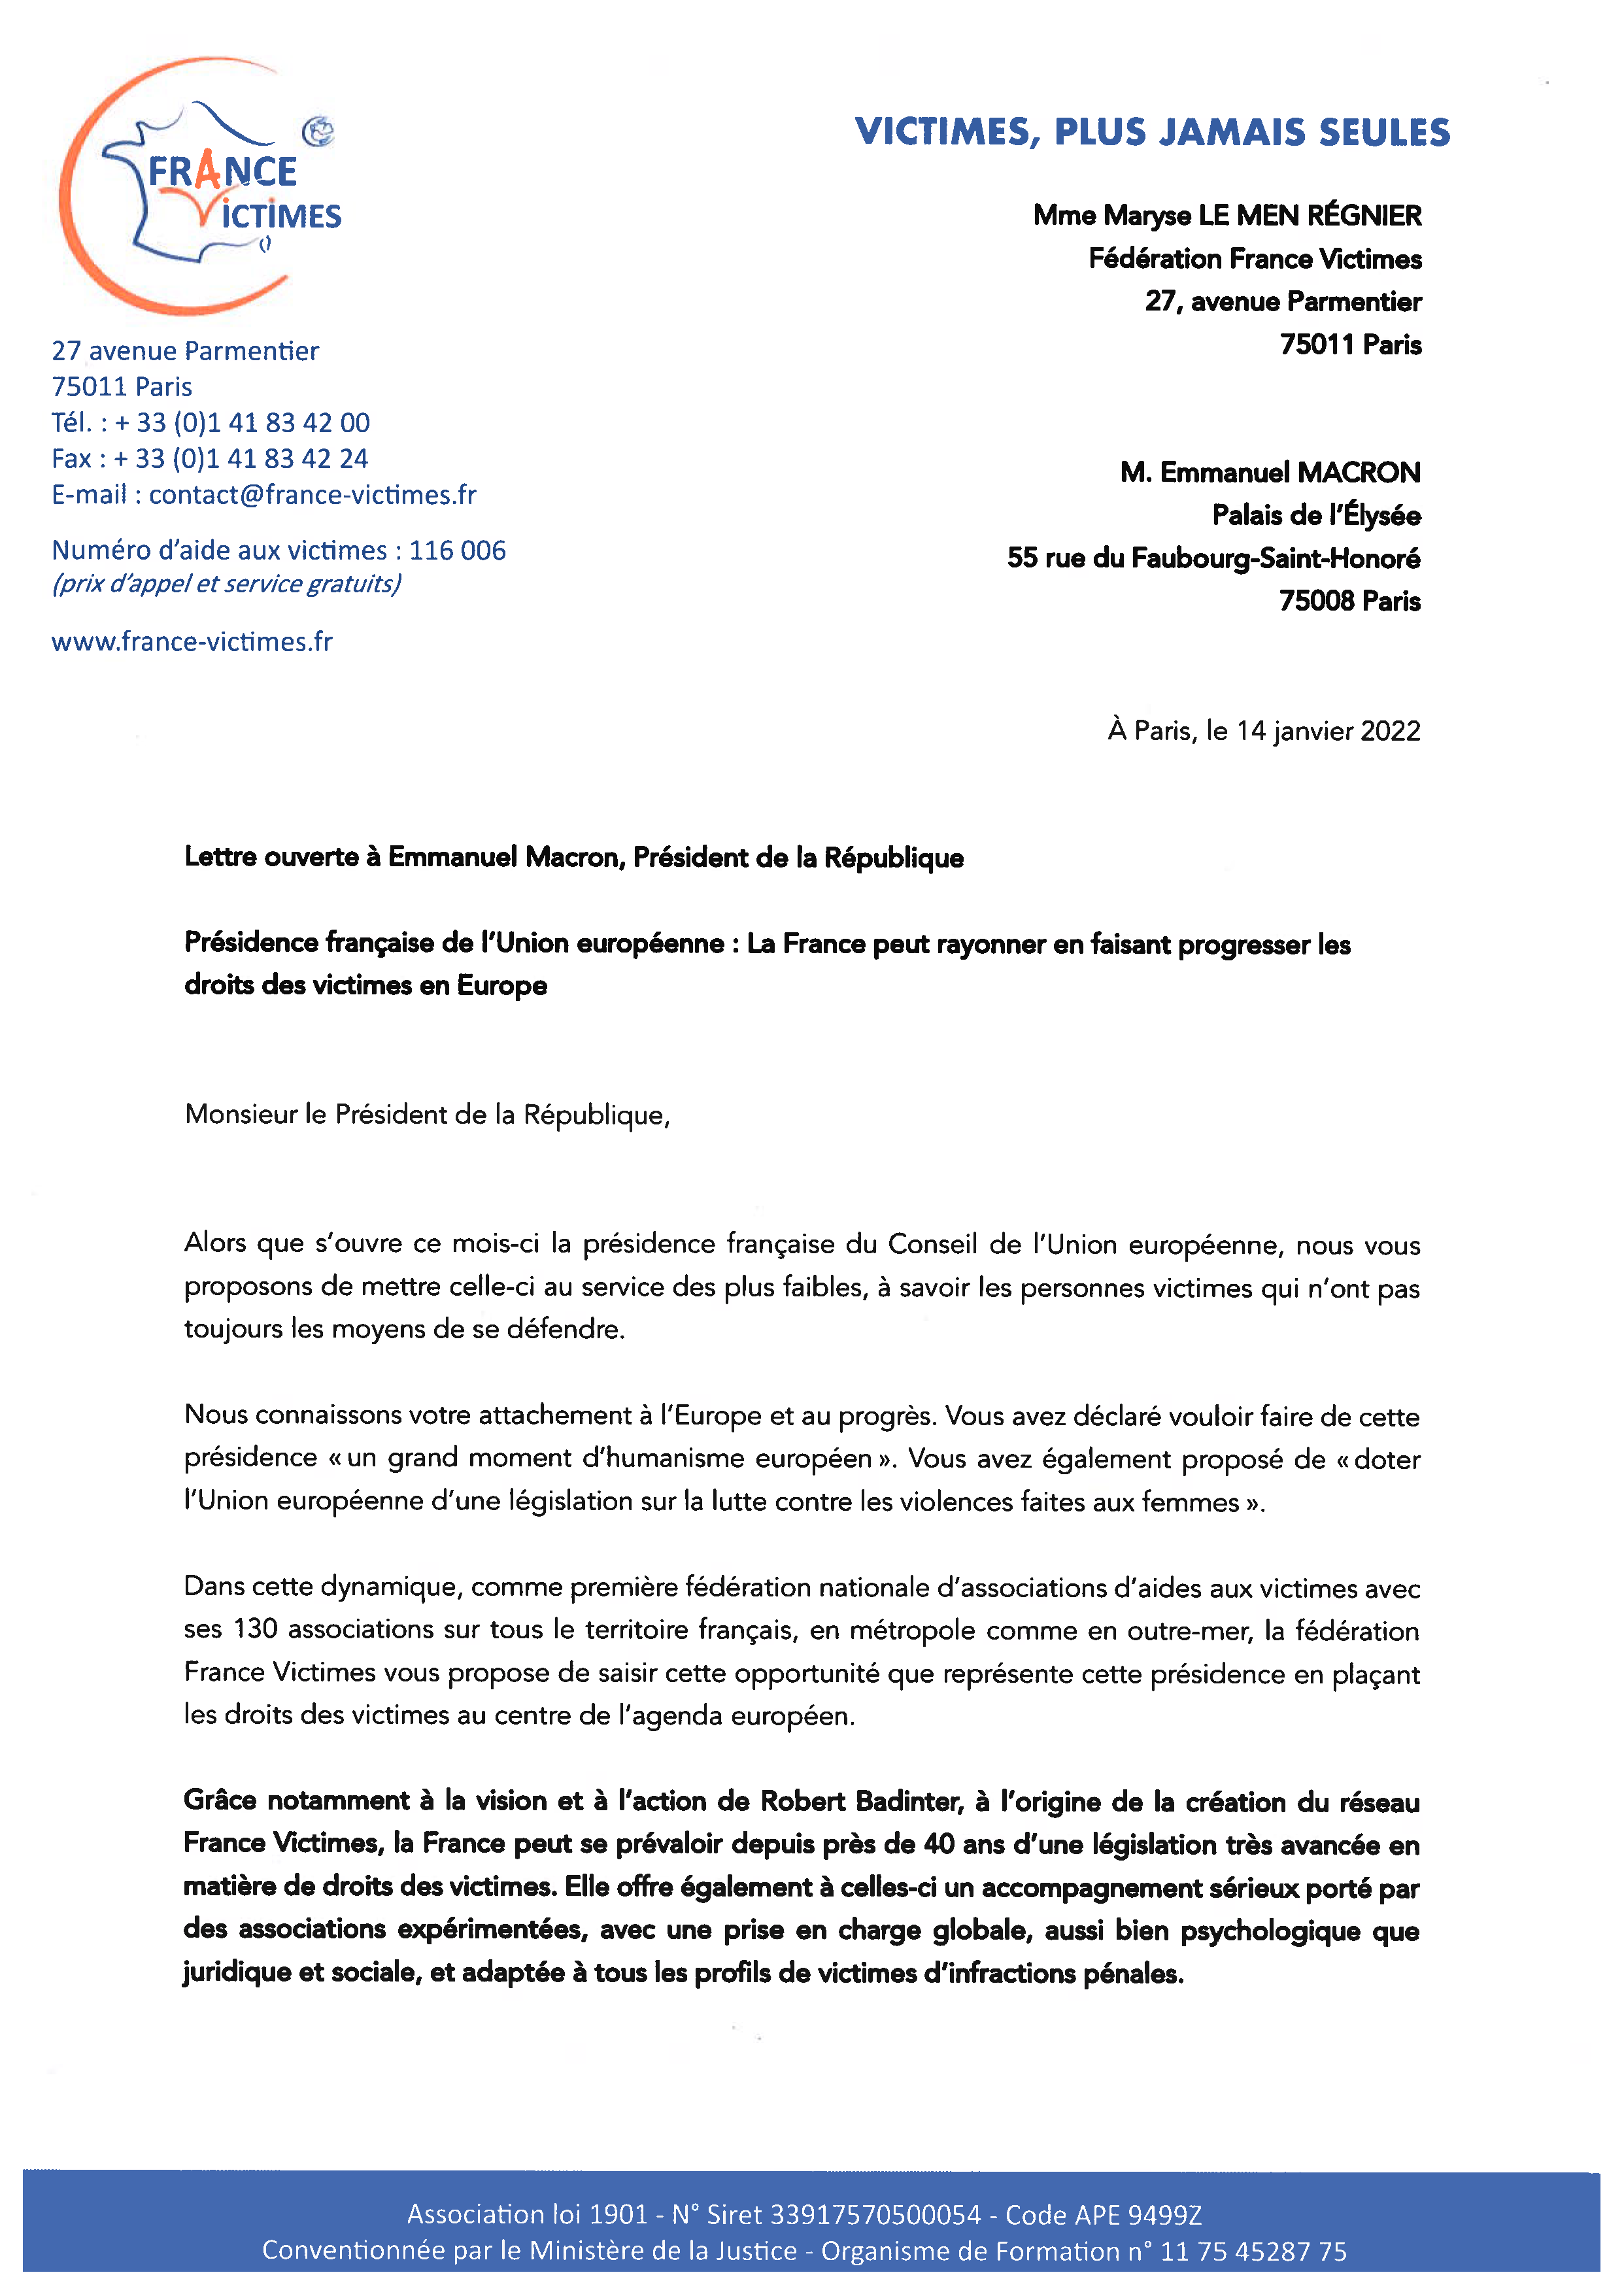 Lettre ouverte au Président de la République - France Victimes